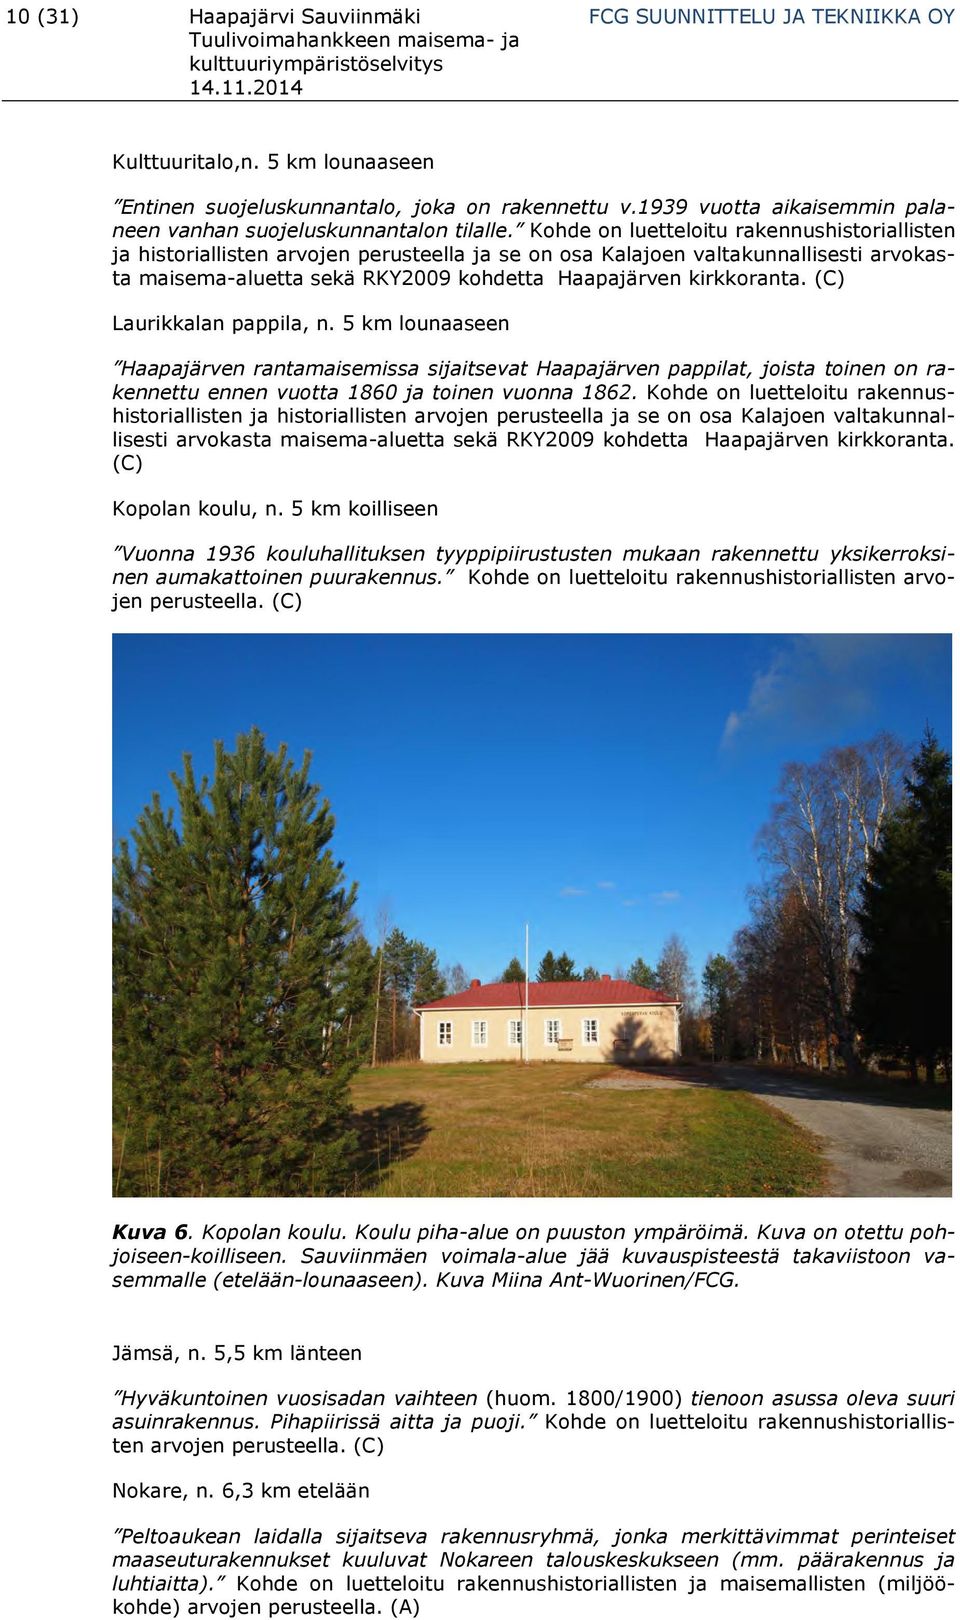 Kohde on luetteloitu rakennushistoriallisten ja historiallisten arvojen perusteella ja se on osa Kalajoen valtakunnallisesti arvokasta maisema-aluetta sekä RKY2009 kohdetta Haapajärven kirkkoranta.